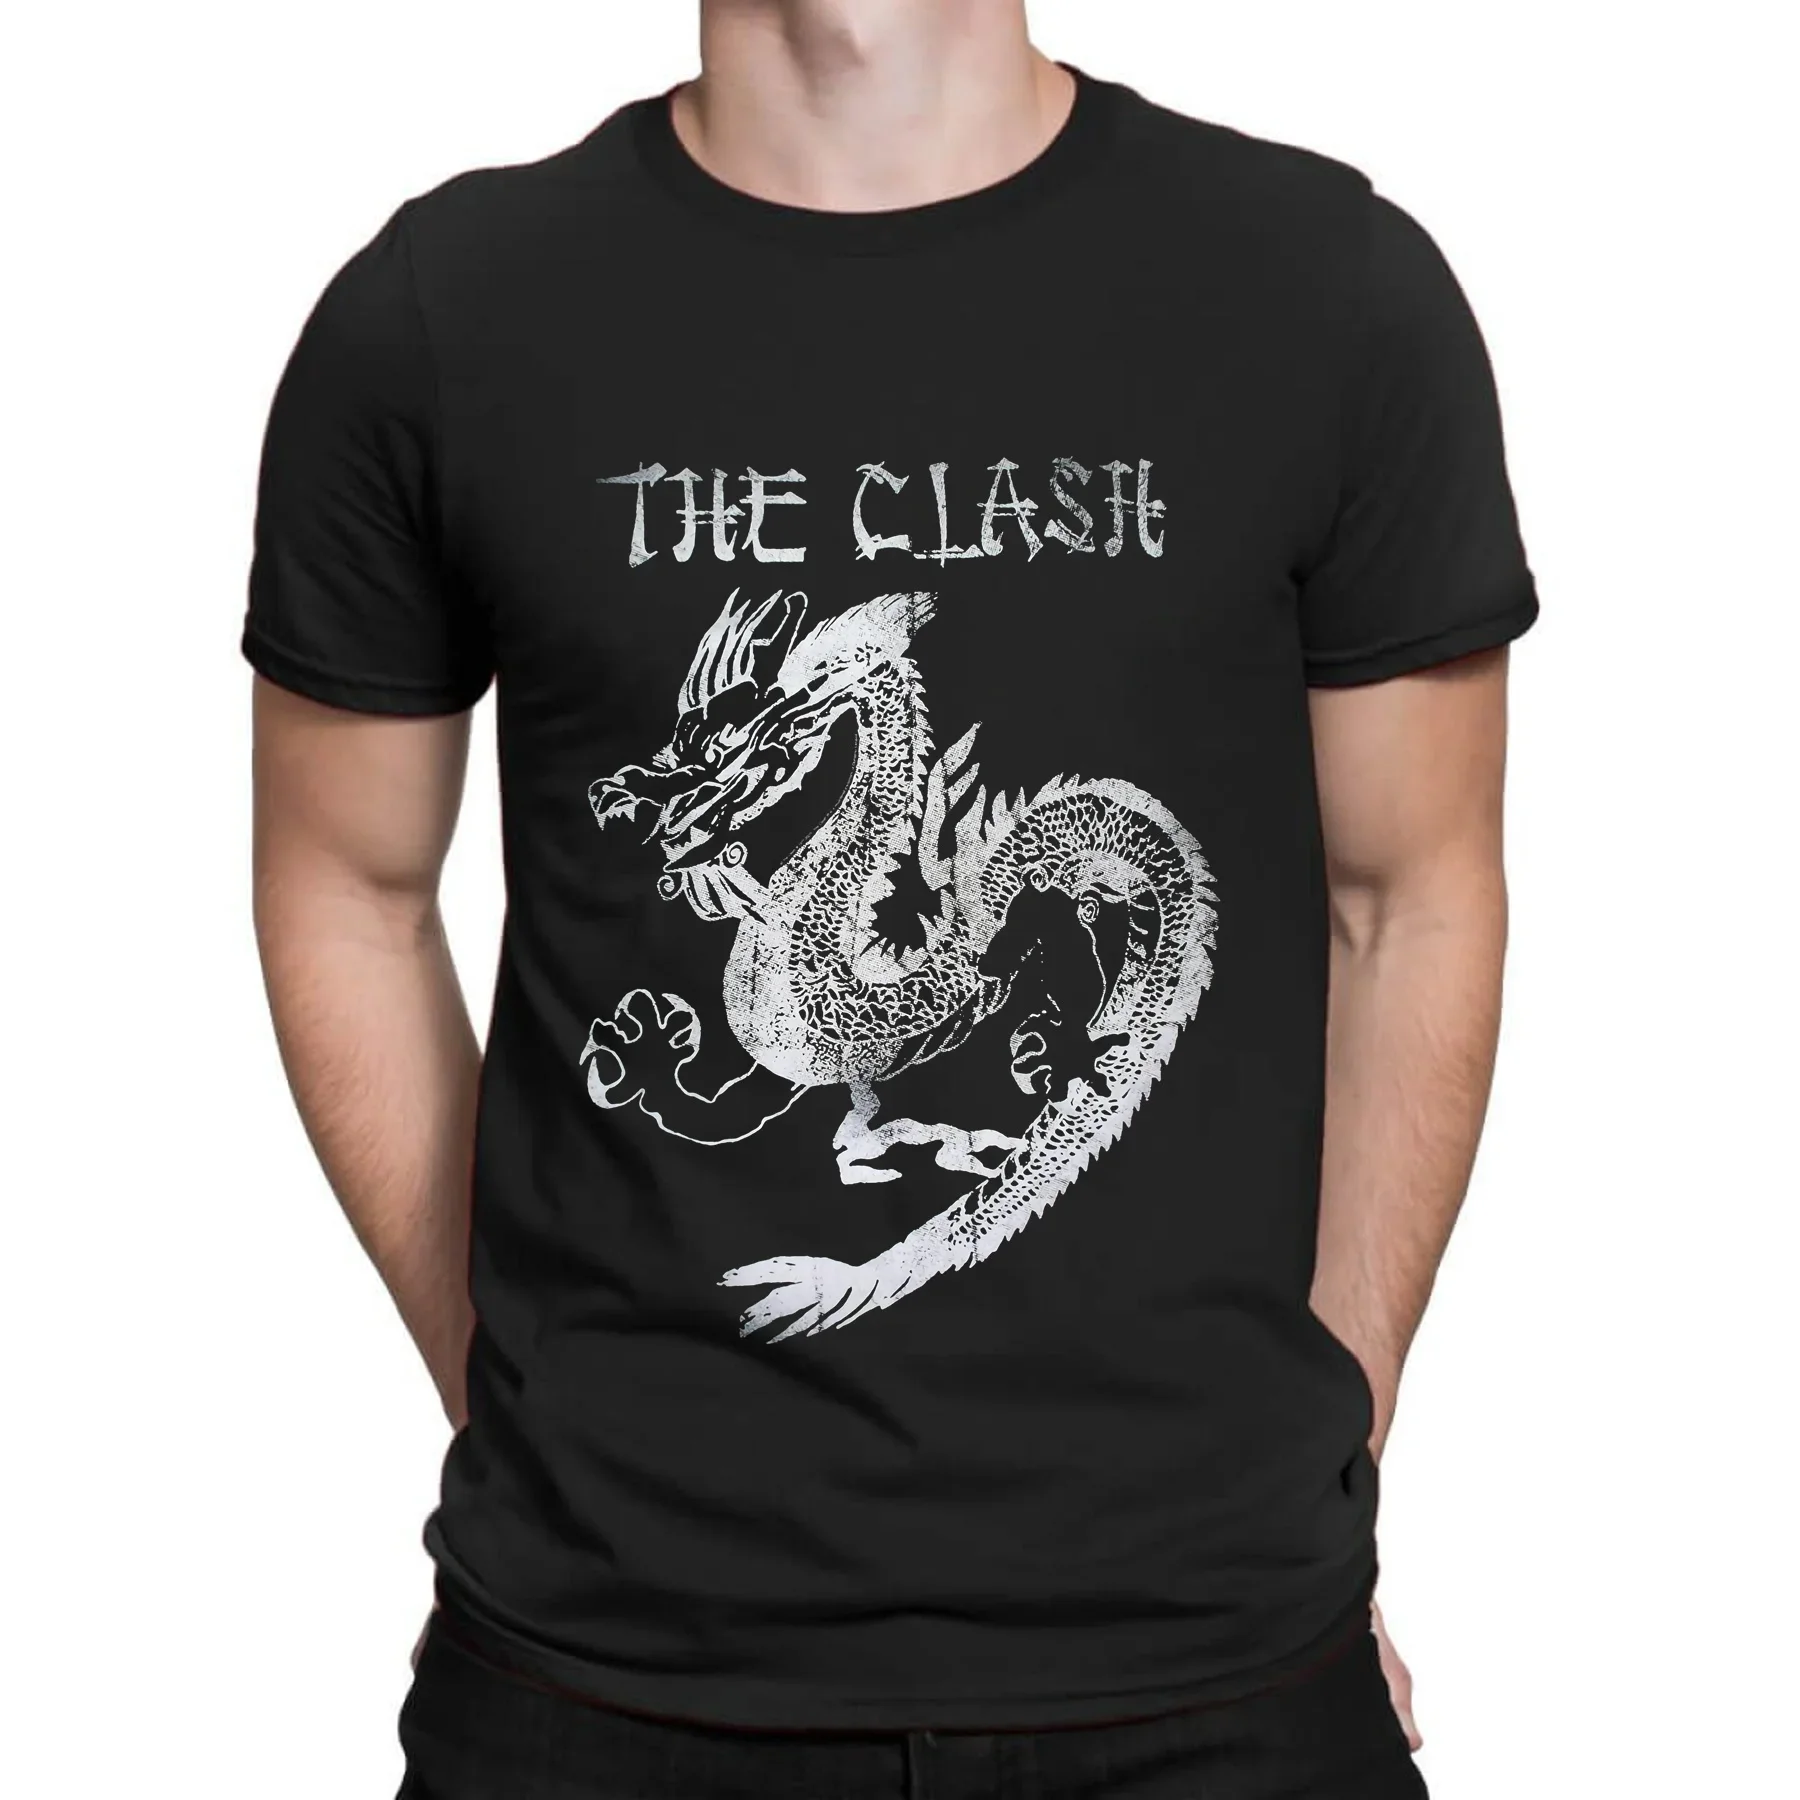 Удивительная футболка, Повседневная футболка с драконом, в стиле панк-рок, металлическая, винтажная, Классическая, необходимая футболка, мужские футболки стандартной длины